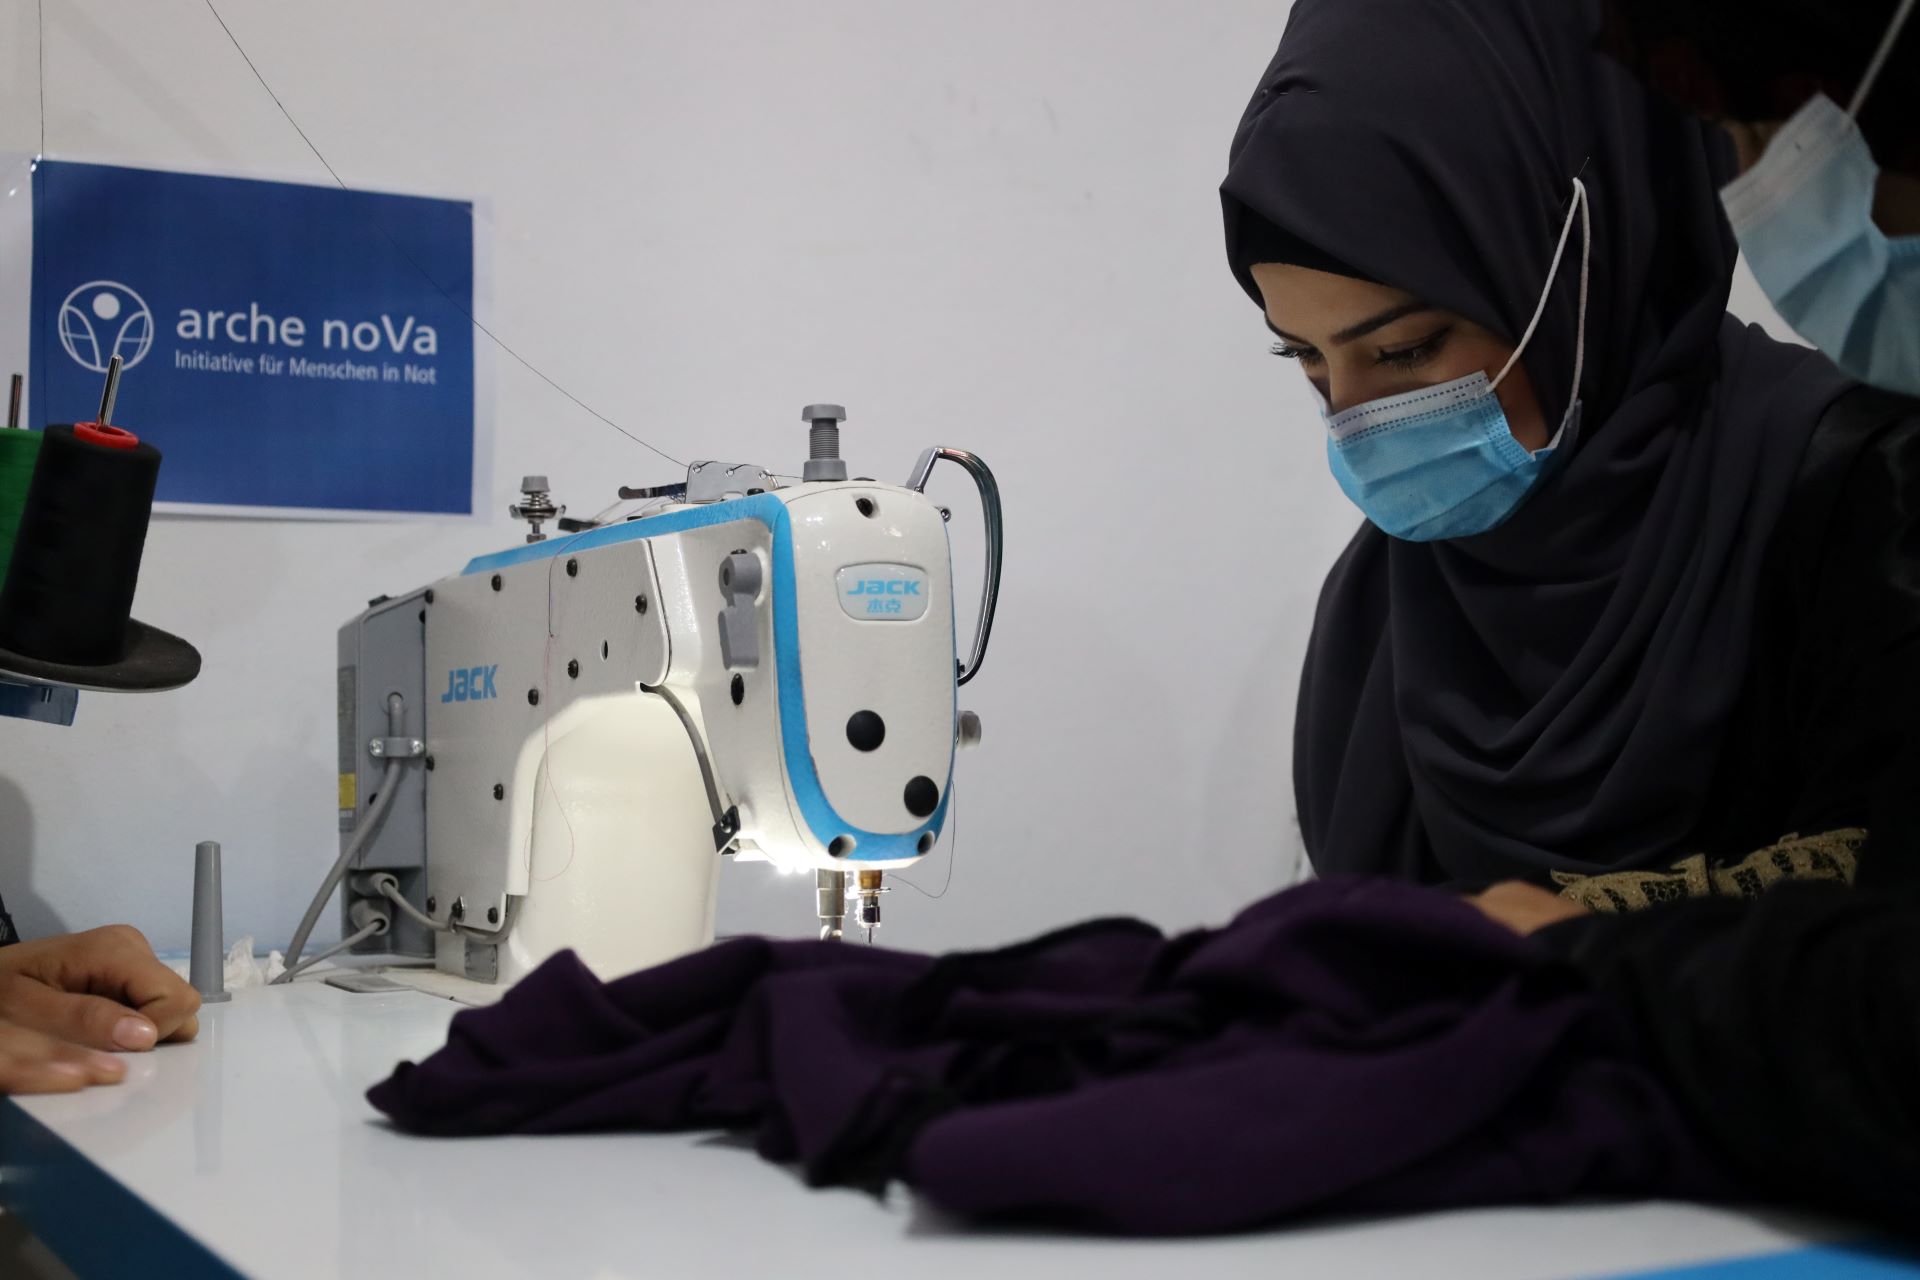 Das Bild zeigt eine junge Frau, die eine Nähmaschine bedient. Im Hintergrund ist das Logo von arche noVa zu sehen.